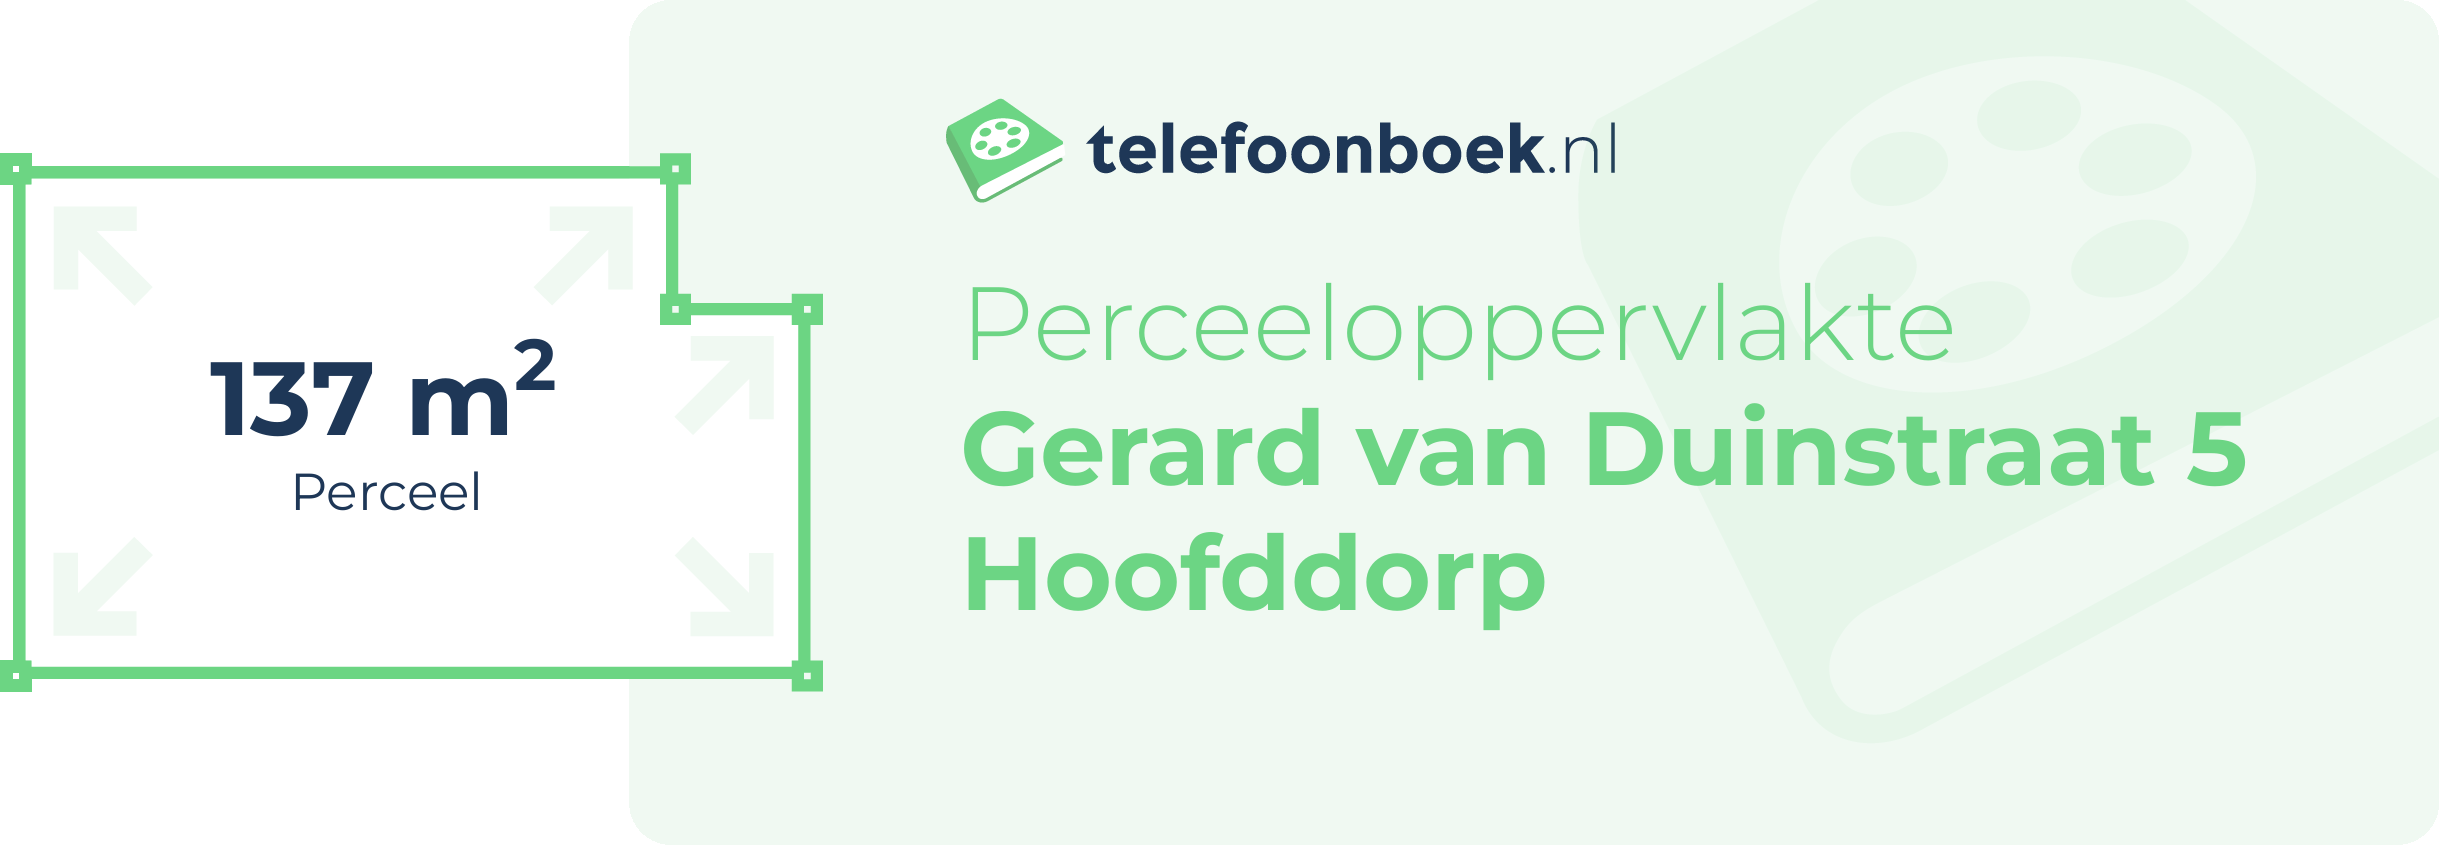 Perceeloppervlakte Gerard Van Duinstraat 5 Hoofddorp